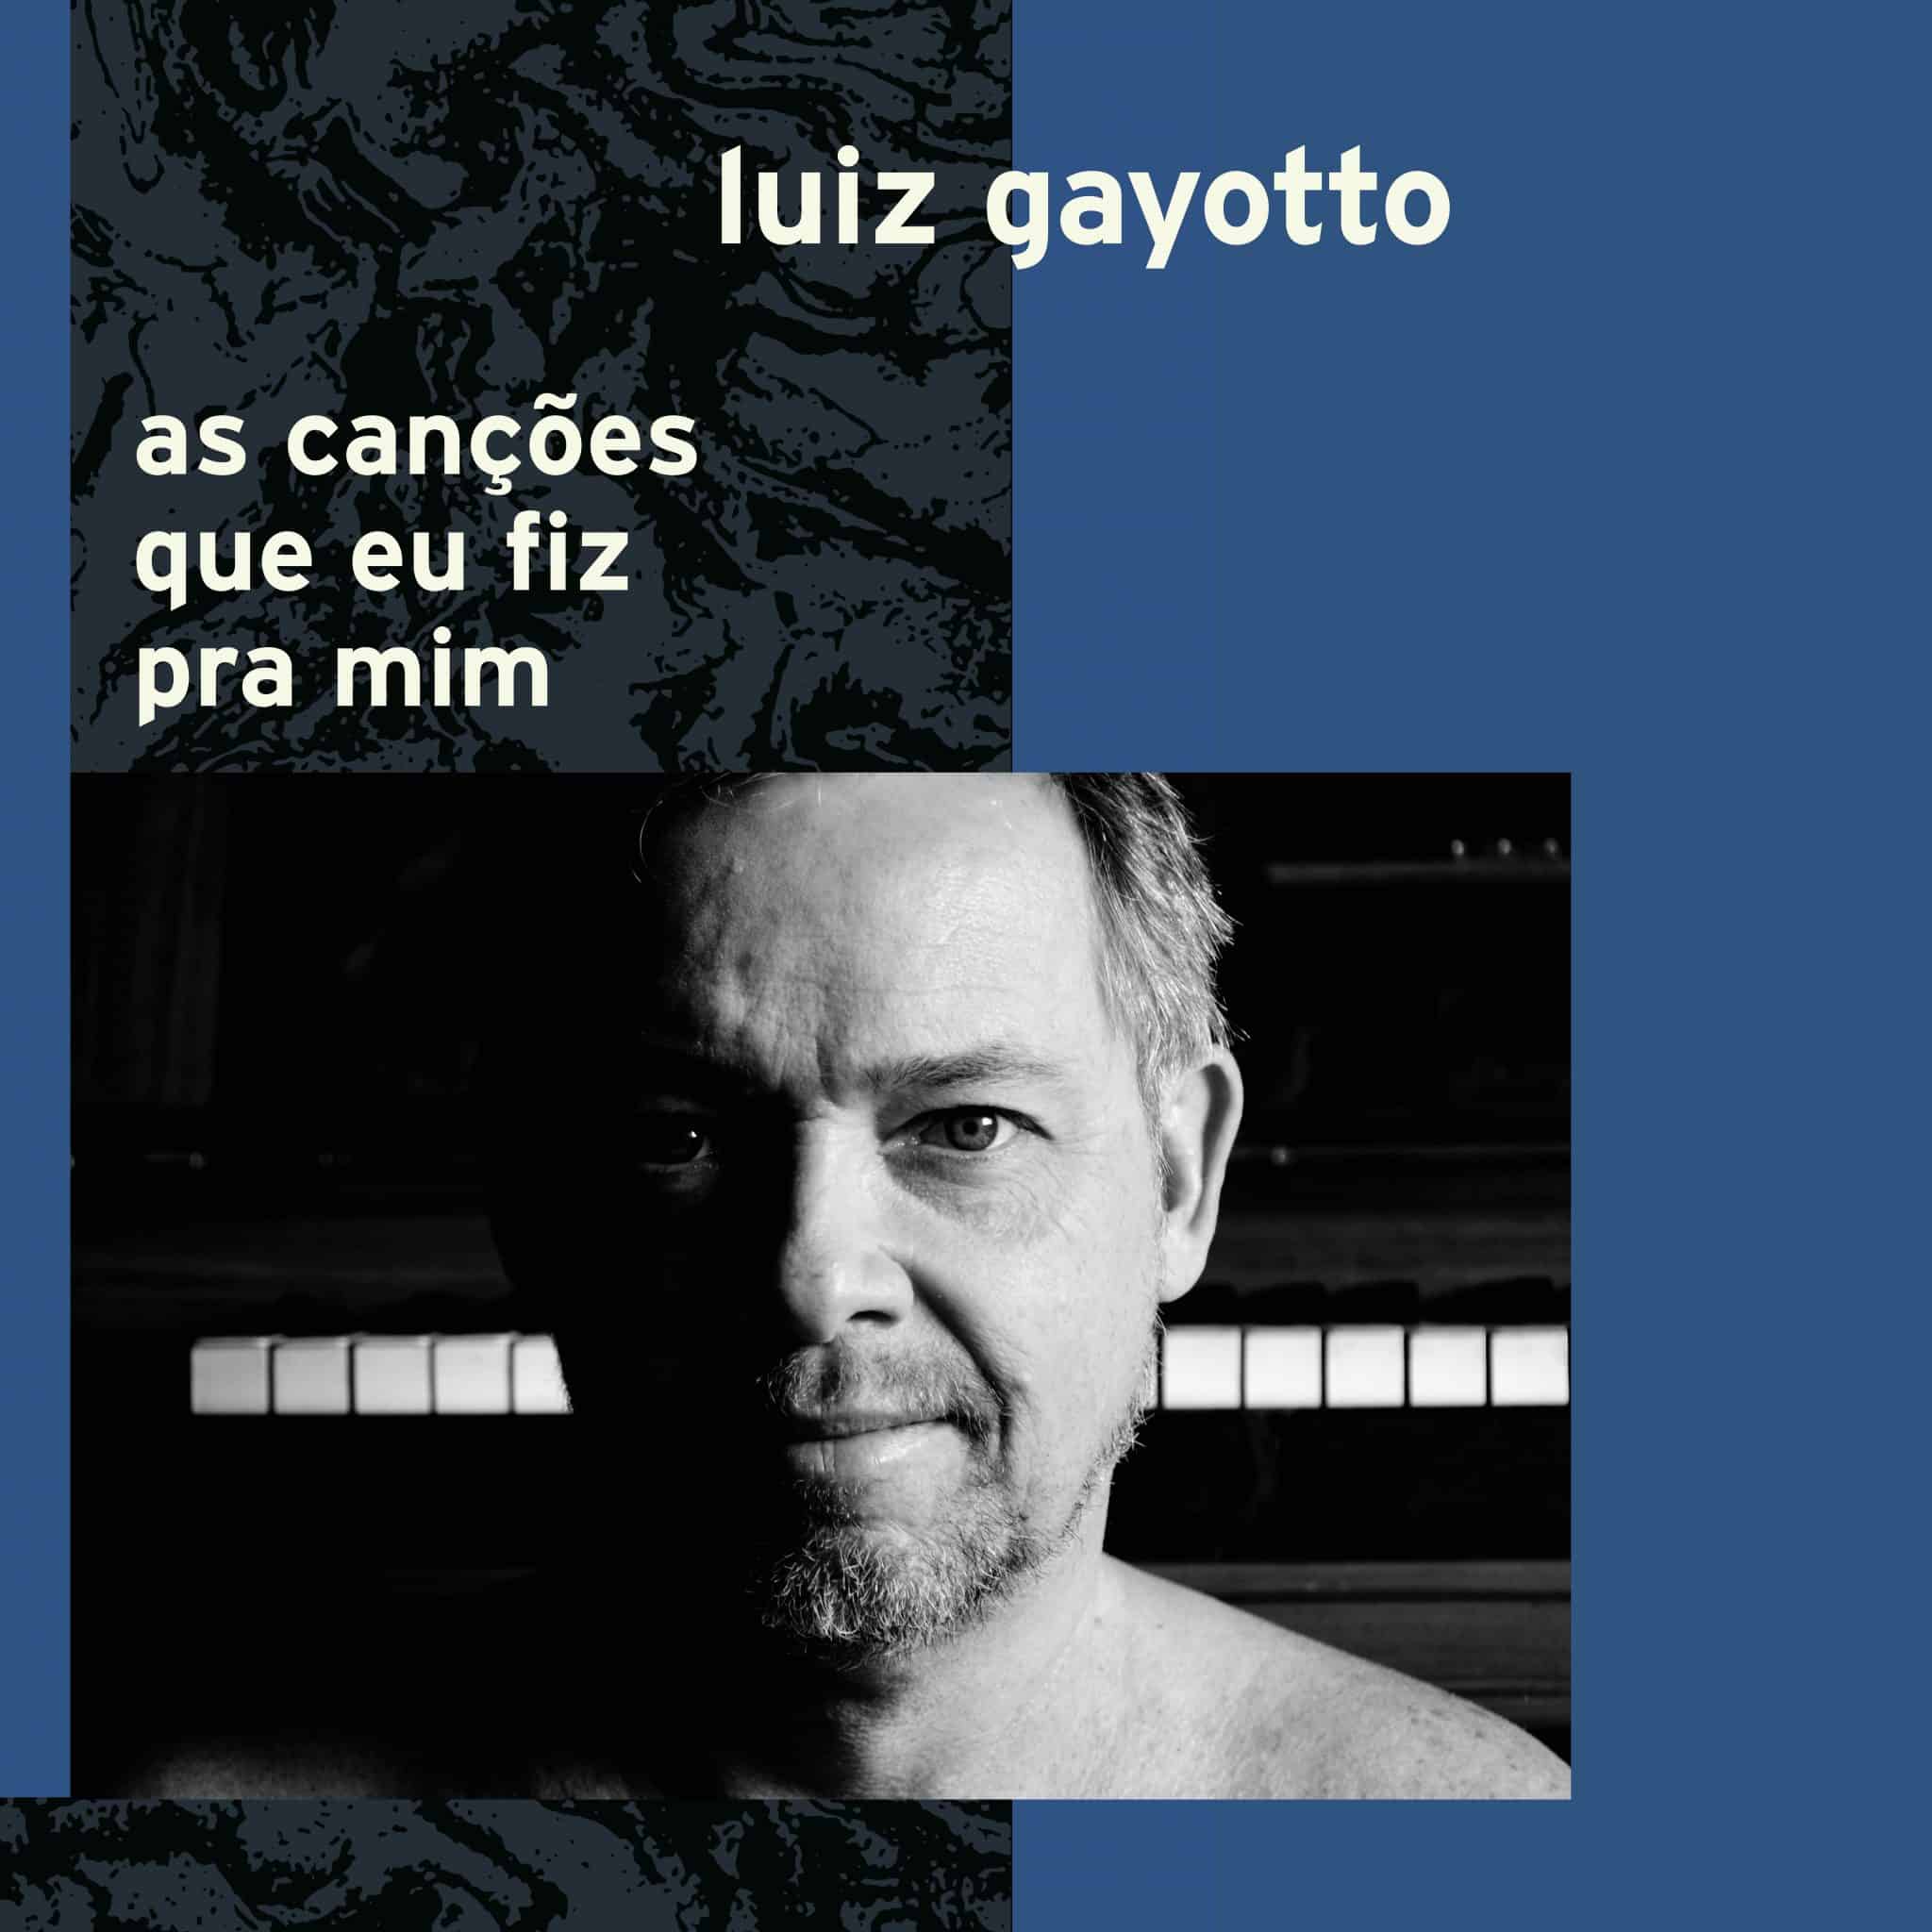 revistaprosaversoearte.com - Luiz Gayotto lança novo álbum 'As Canções Que Eu Fiz Pra Mim' celebrando  25 anos de carreira